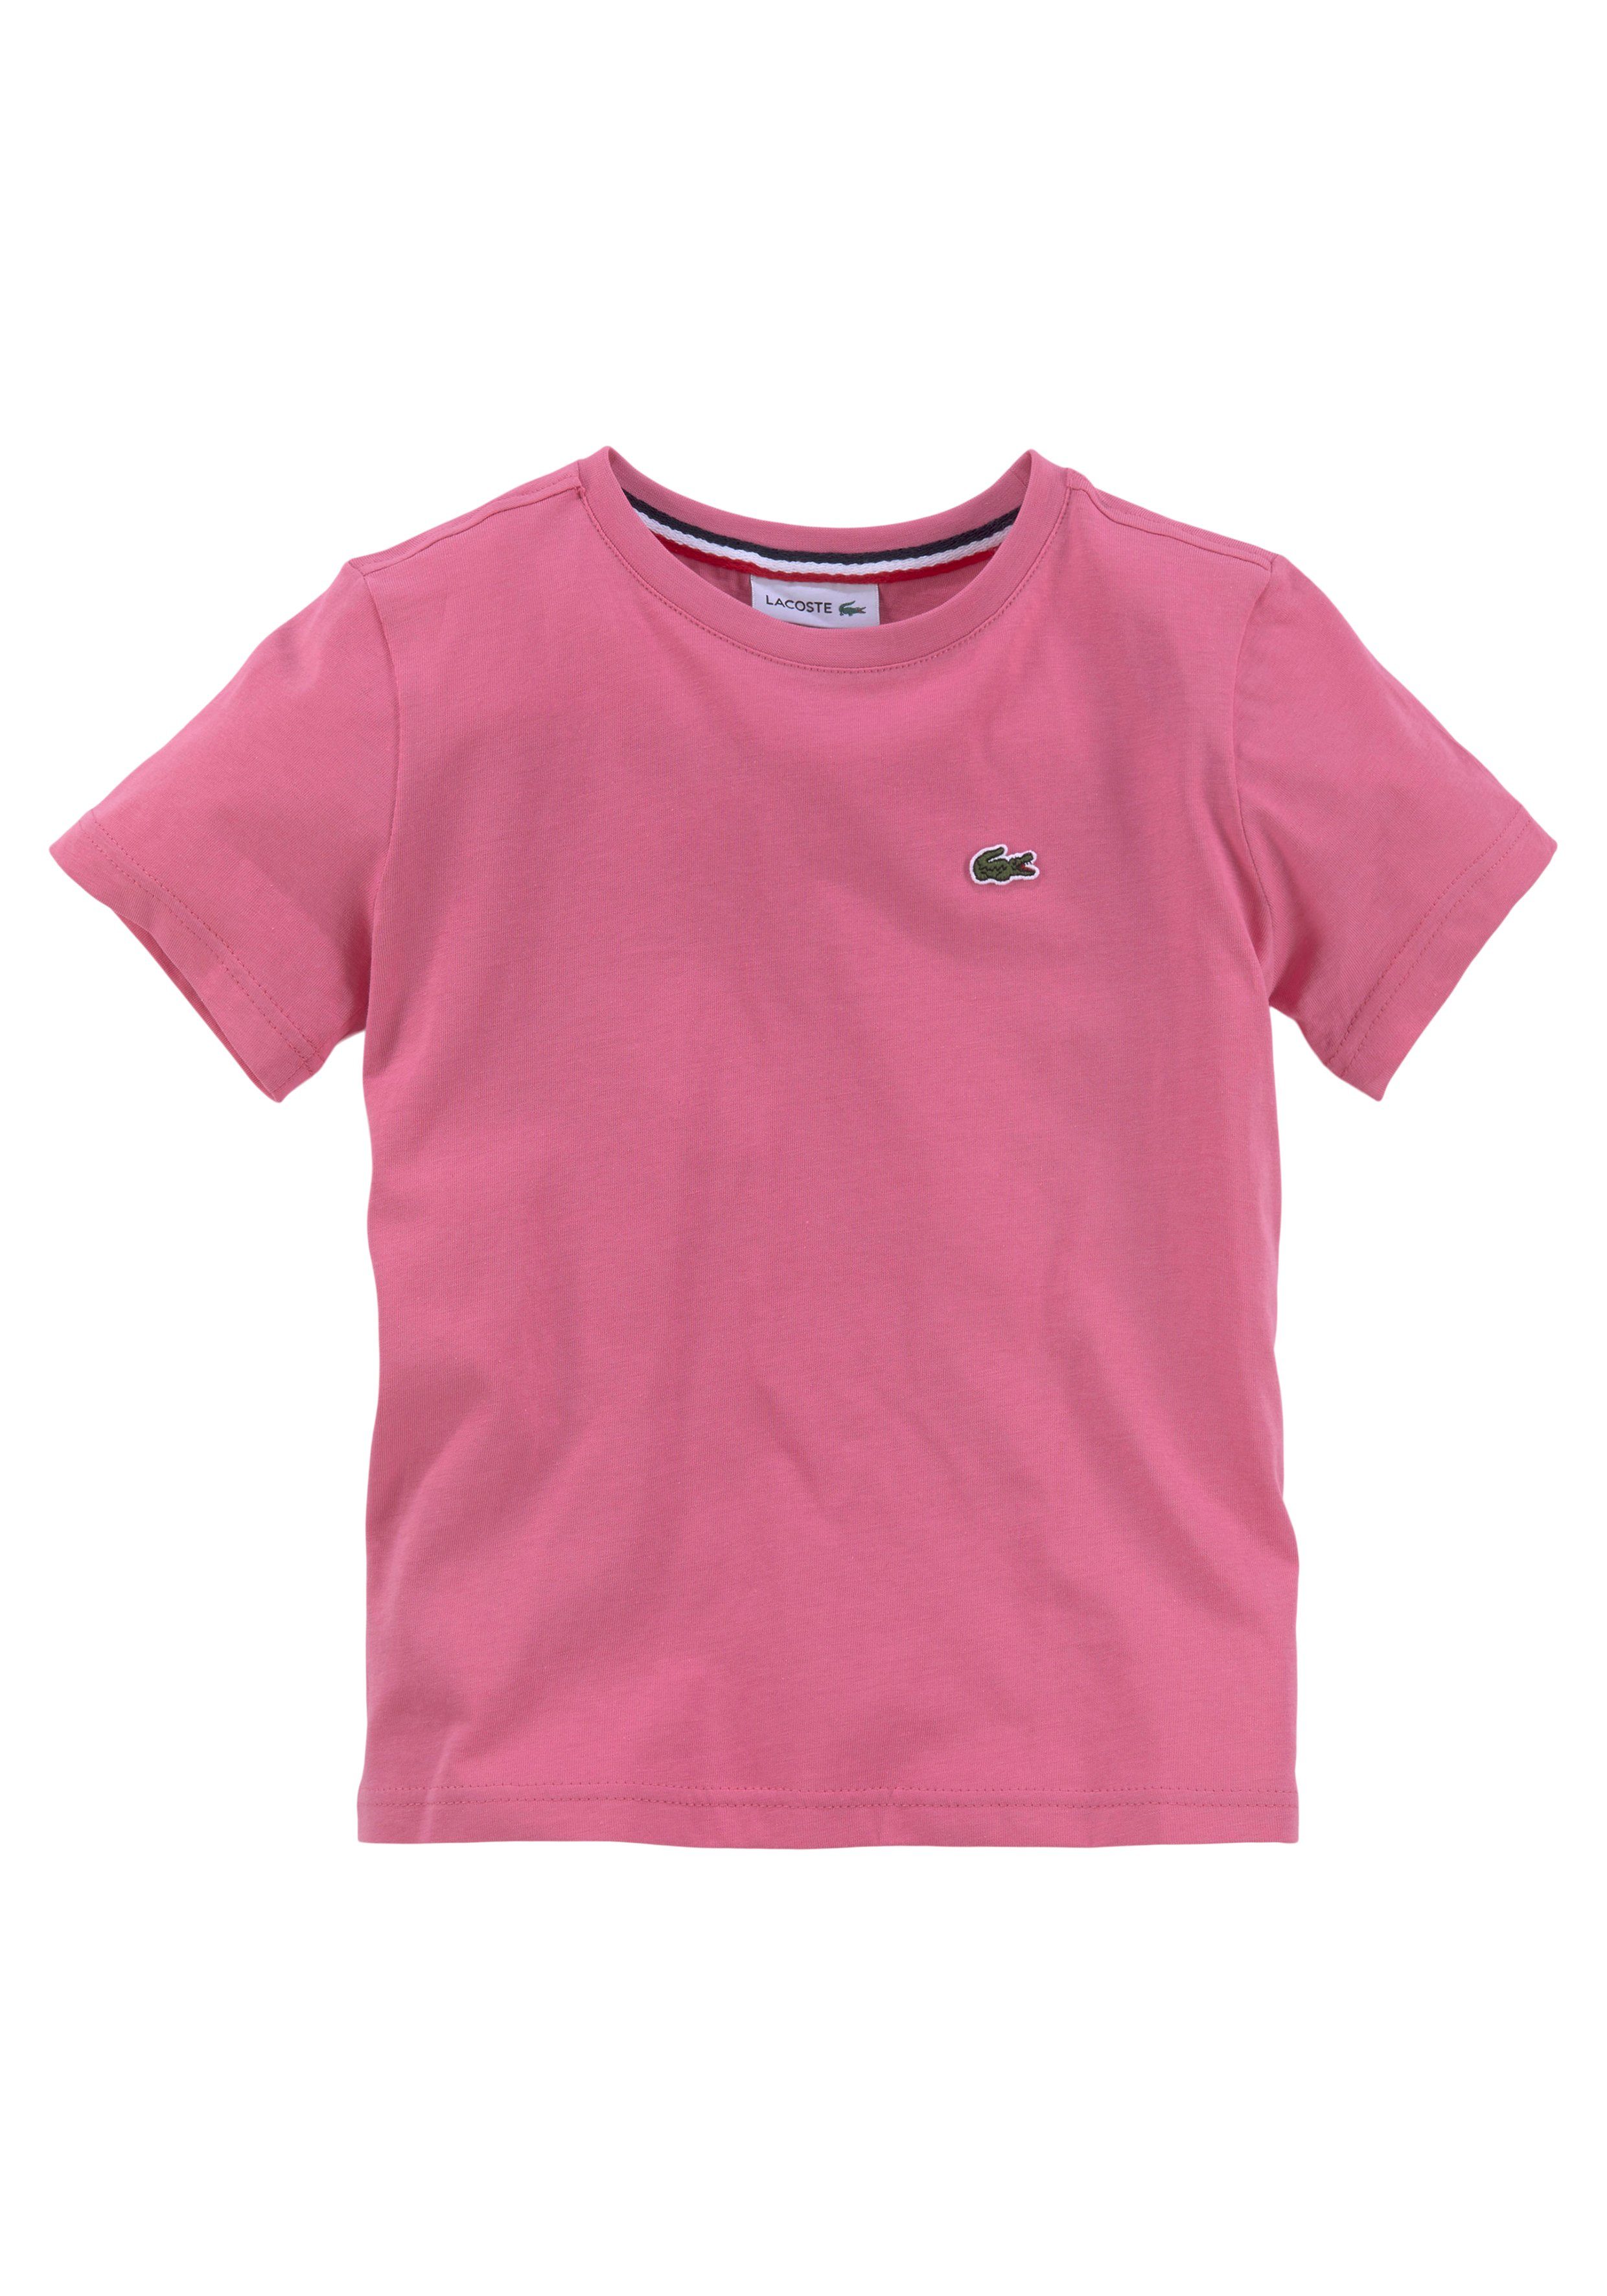 Rundhalsausschnitt Lacoste mit reseda T-Shirt pink